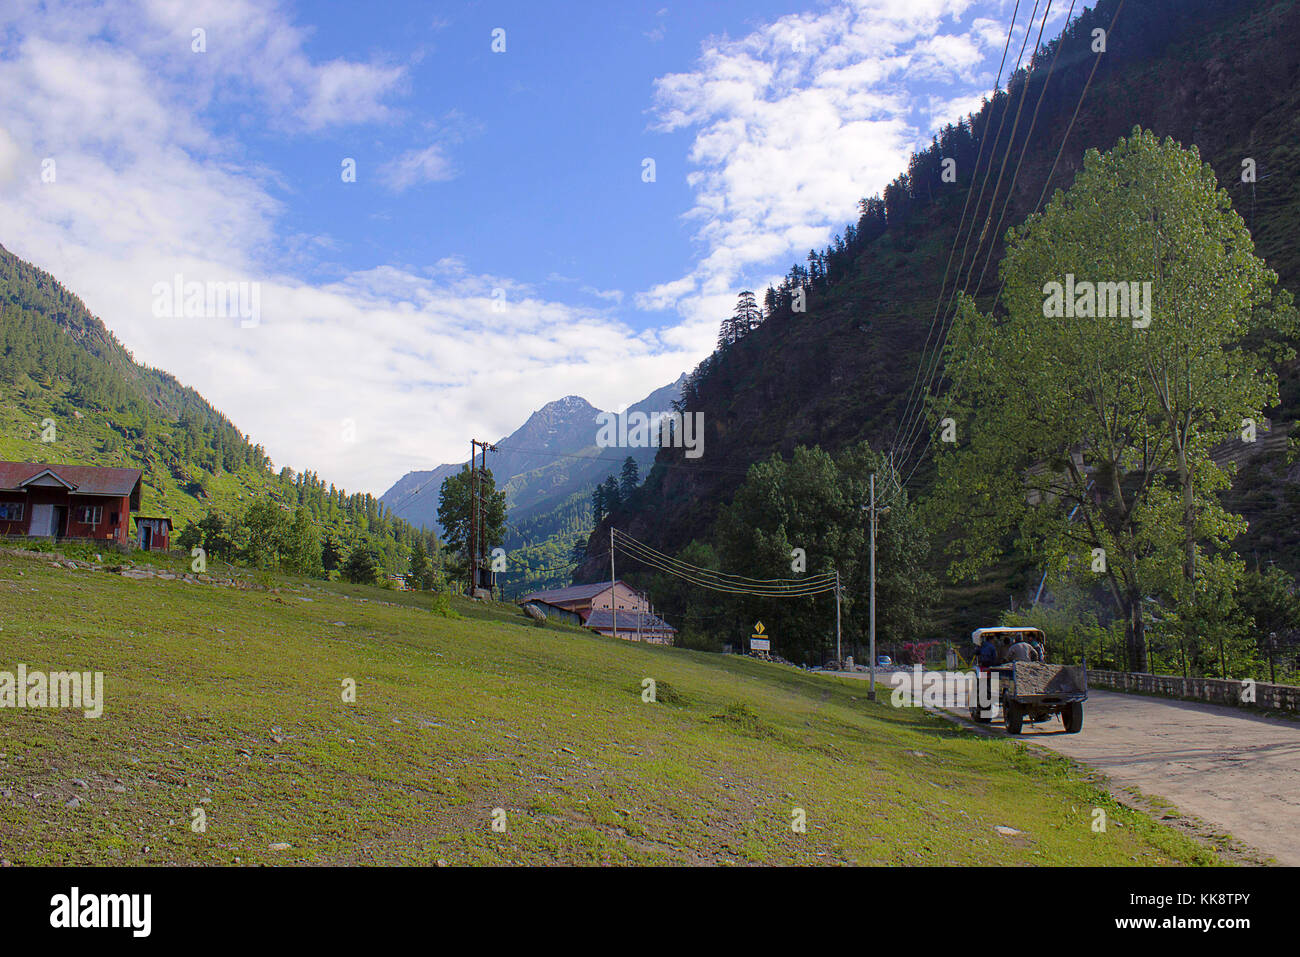 Kalpa est une petite ville dans la vallée de la rivière Sutlej. Himachal Pradesh, Inde du Nord. Banque D'Images